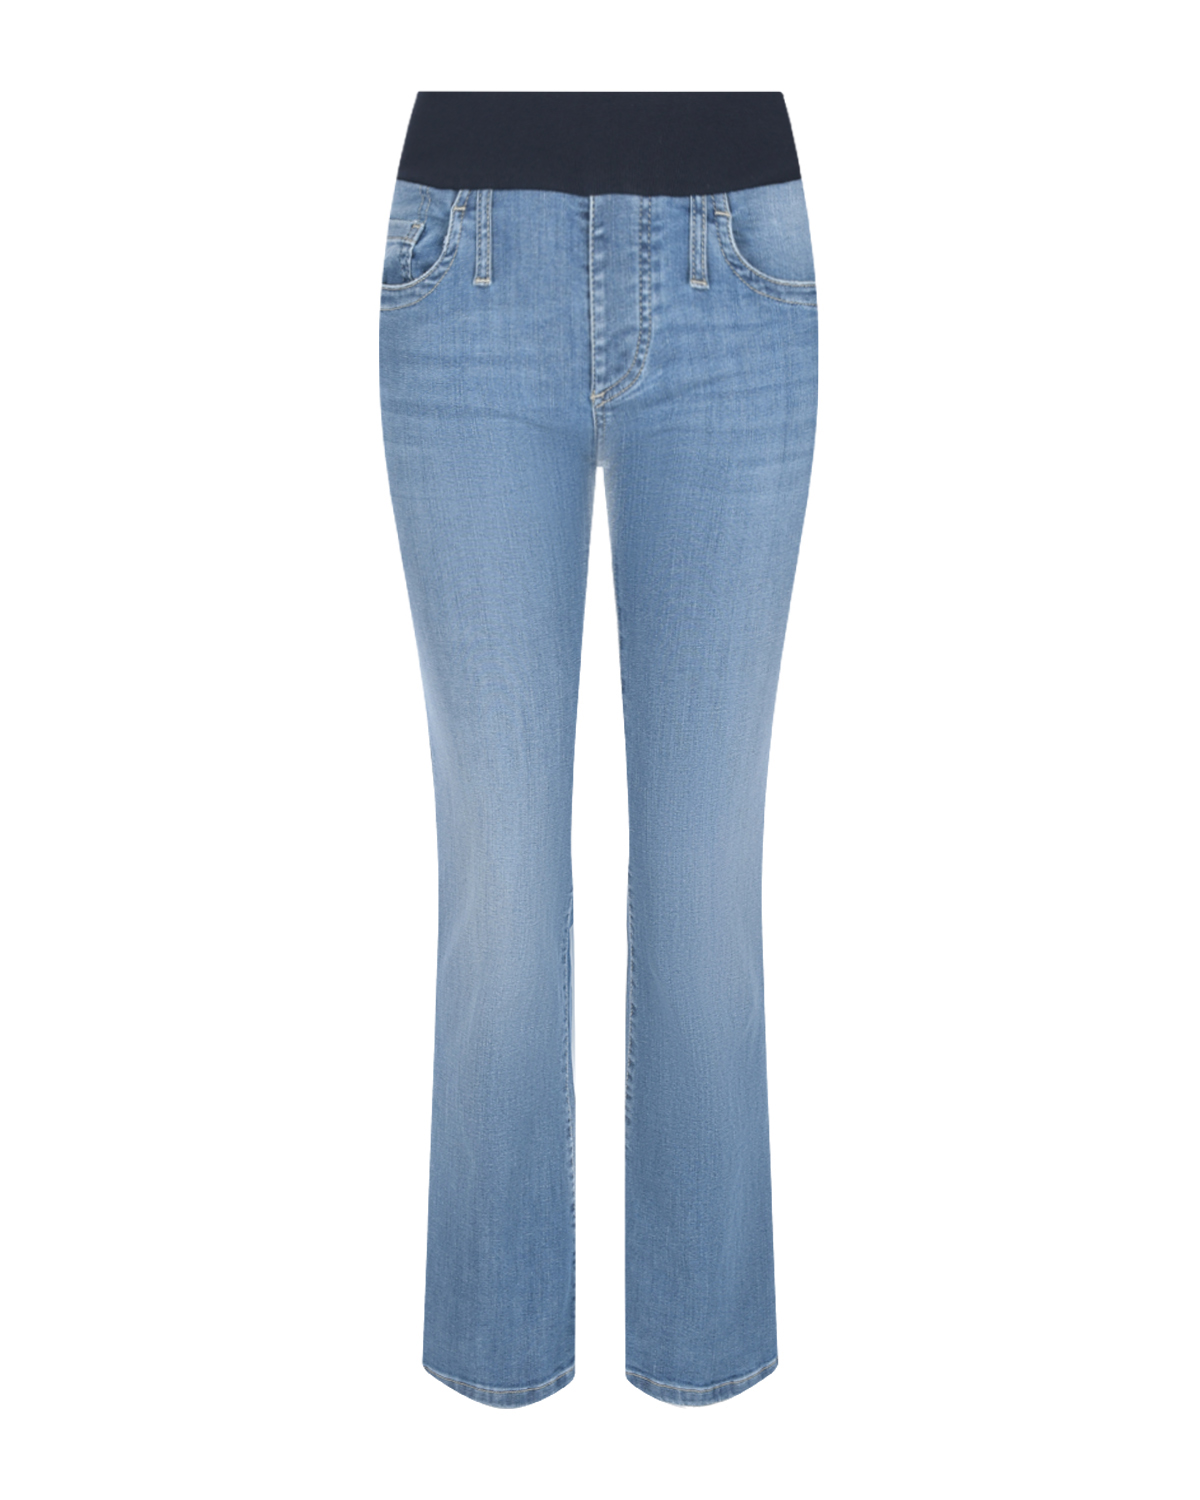 Синие джинсы клеш для беременных Pietro Brunelli белые джинсы капри для беременных pietro brunelli